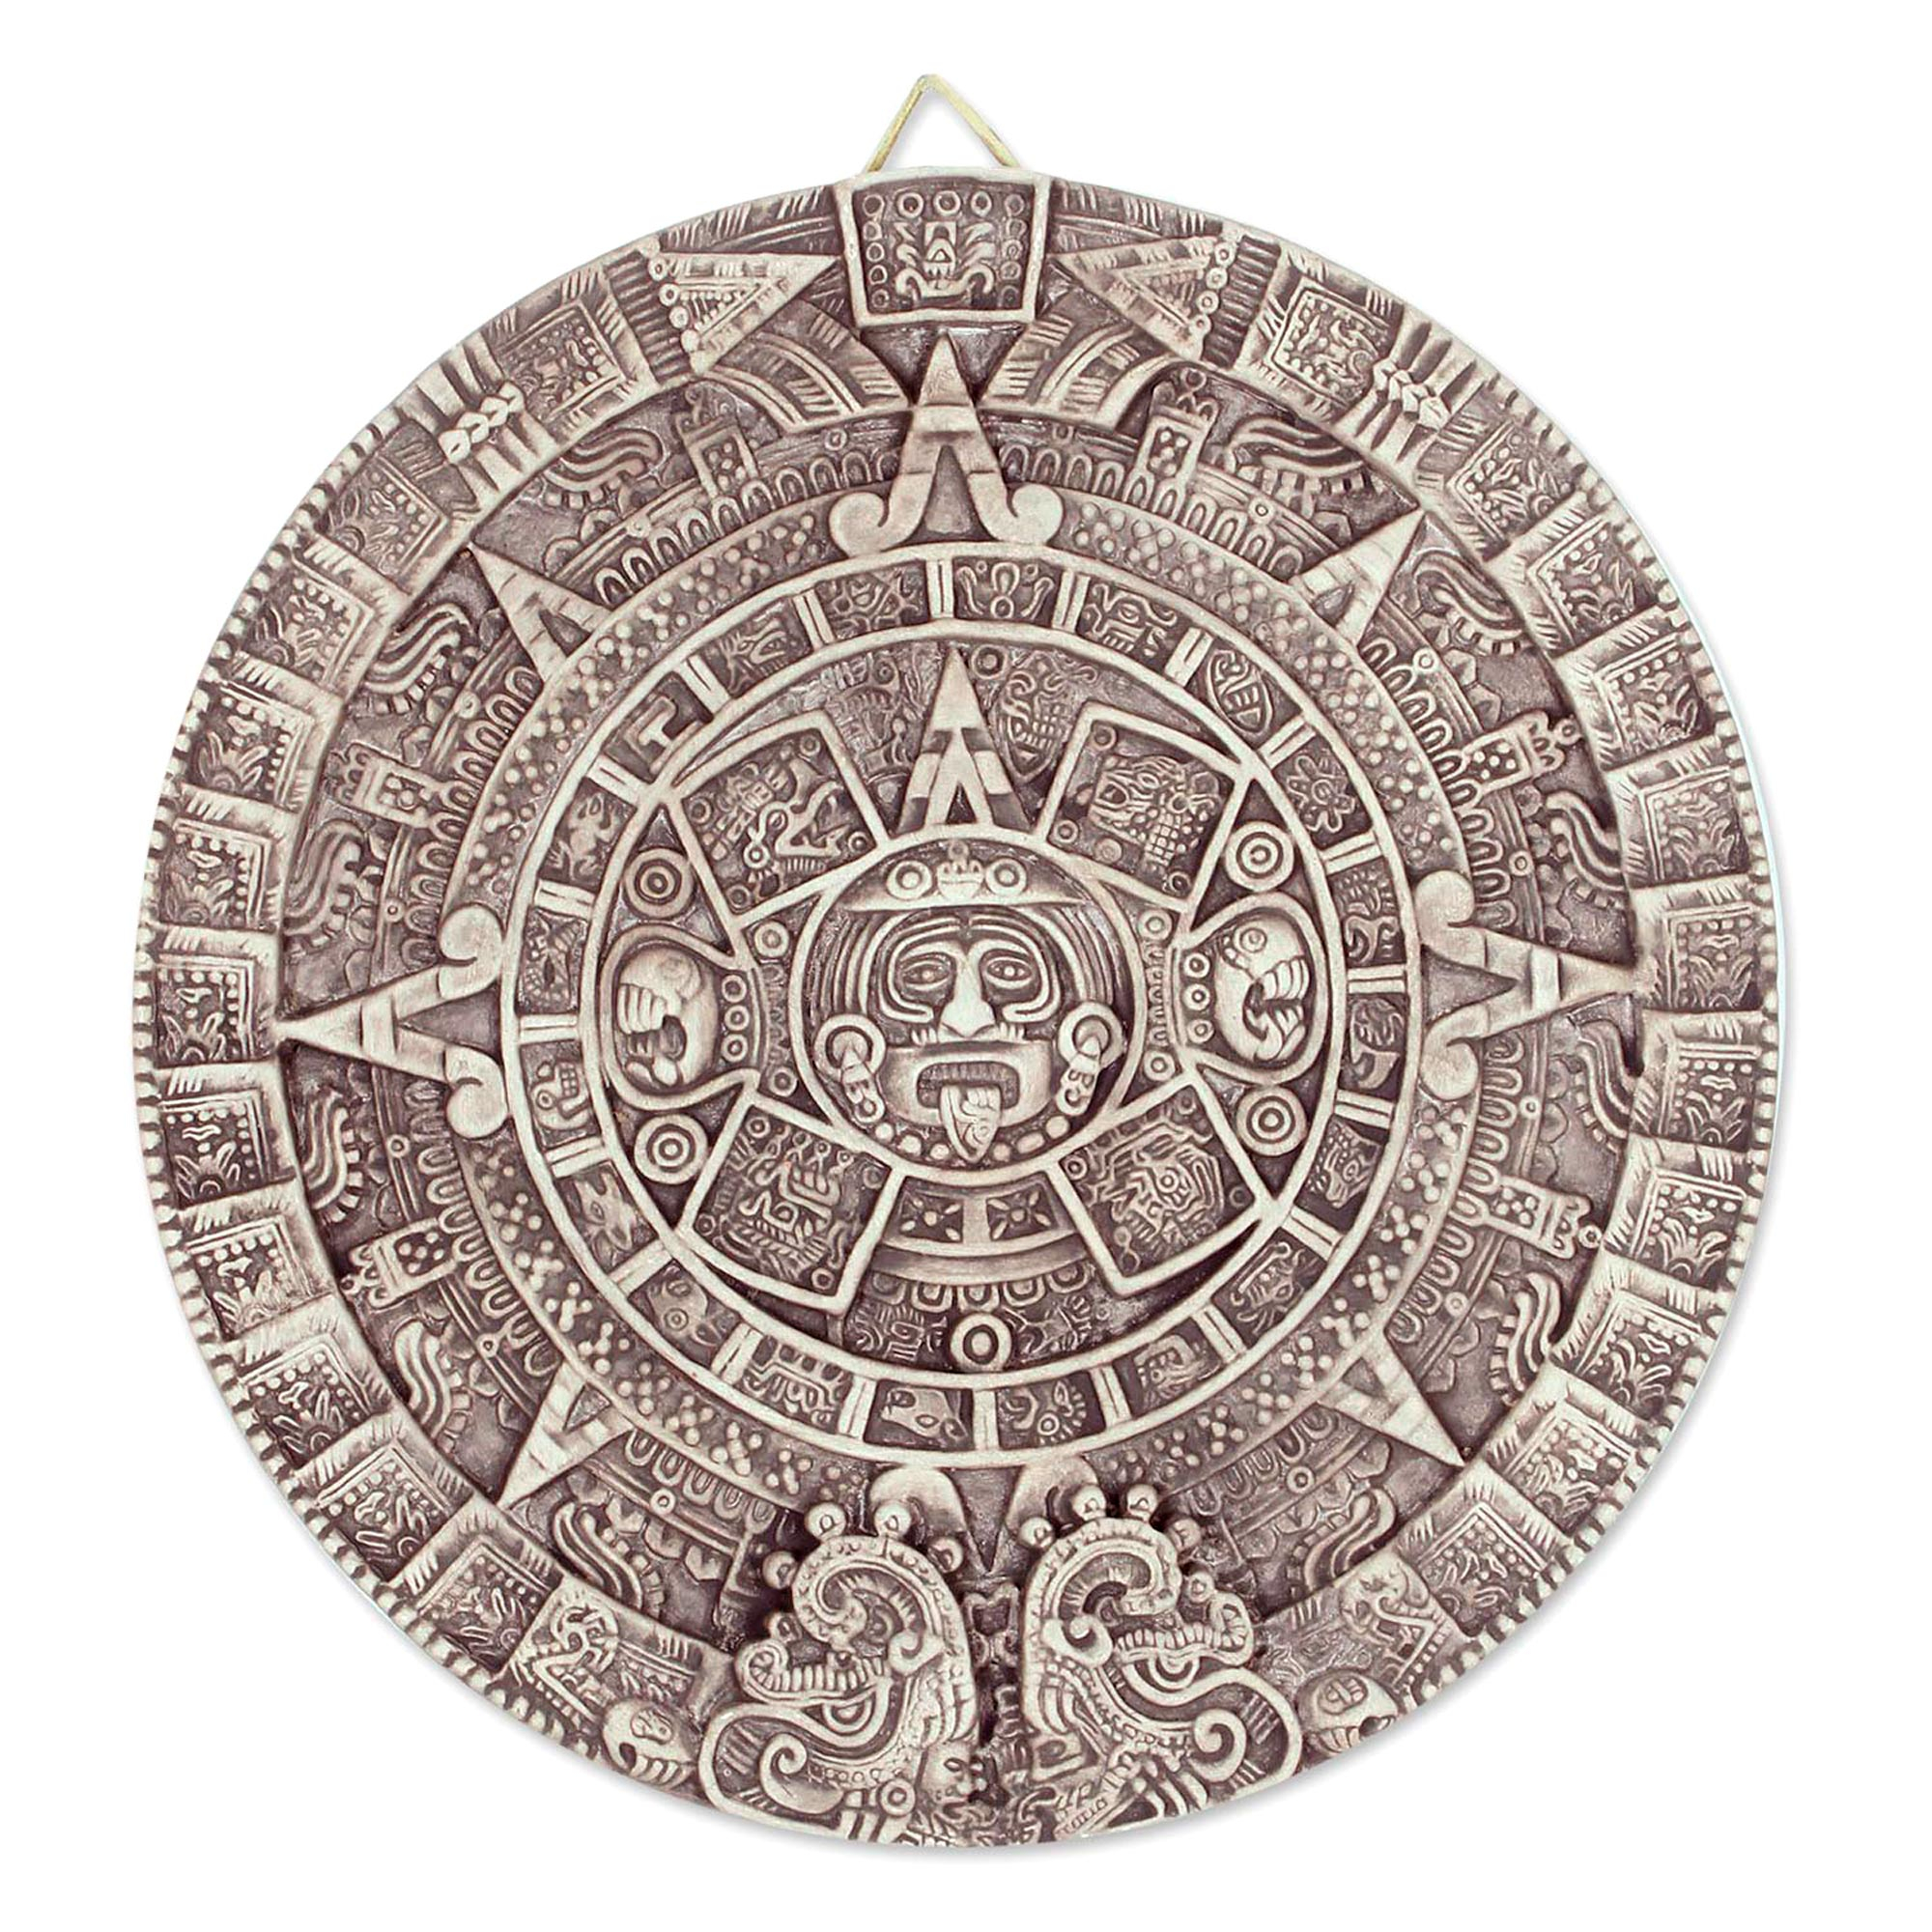 Календарь майя слушать полностью